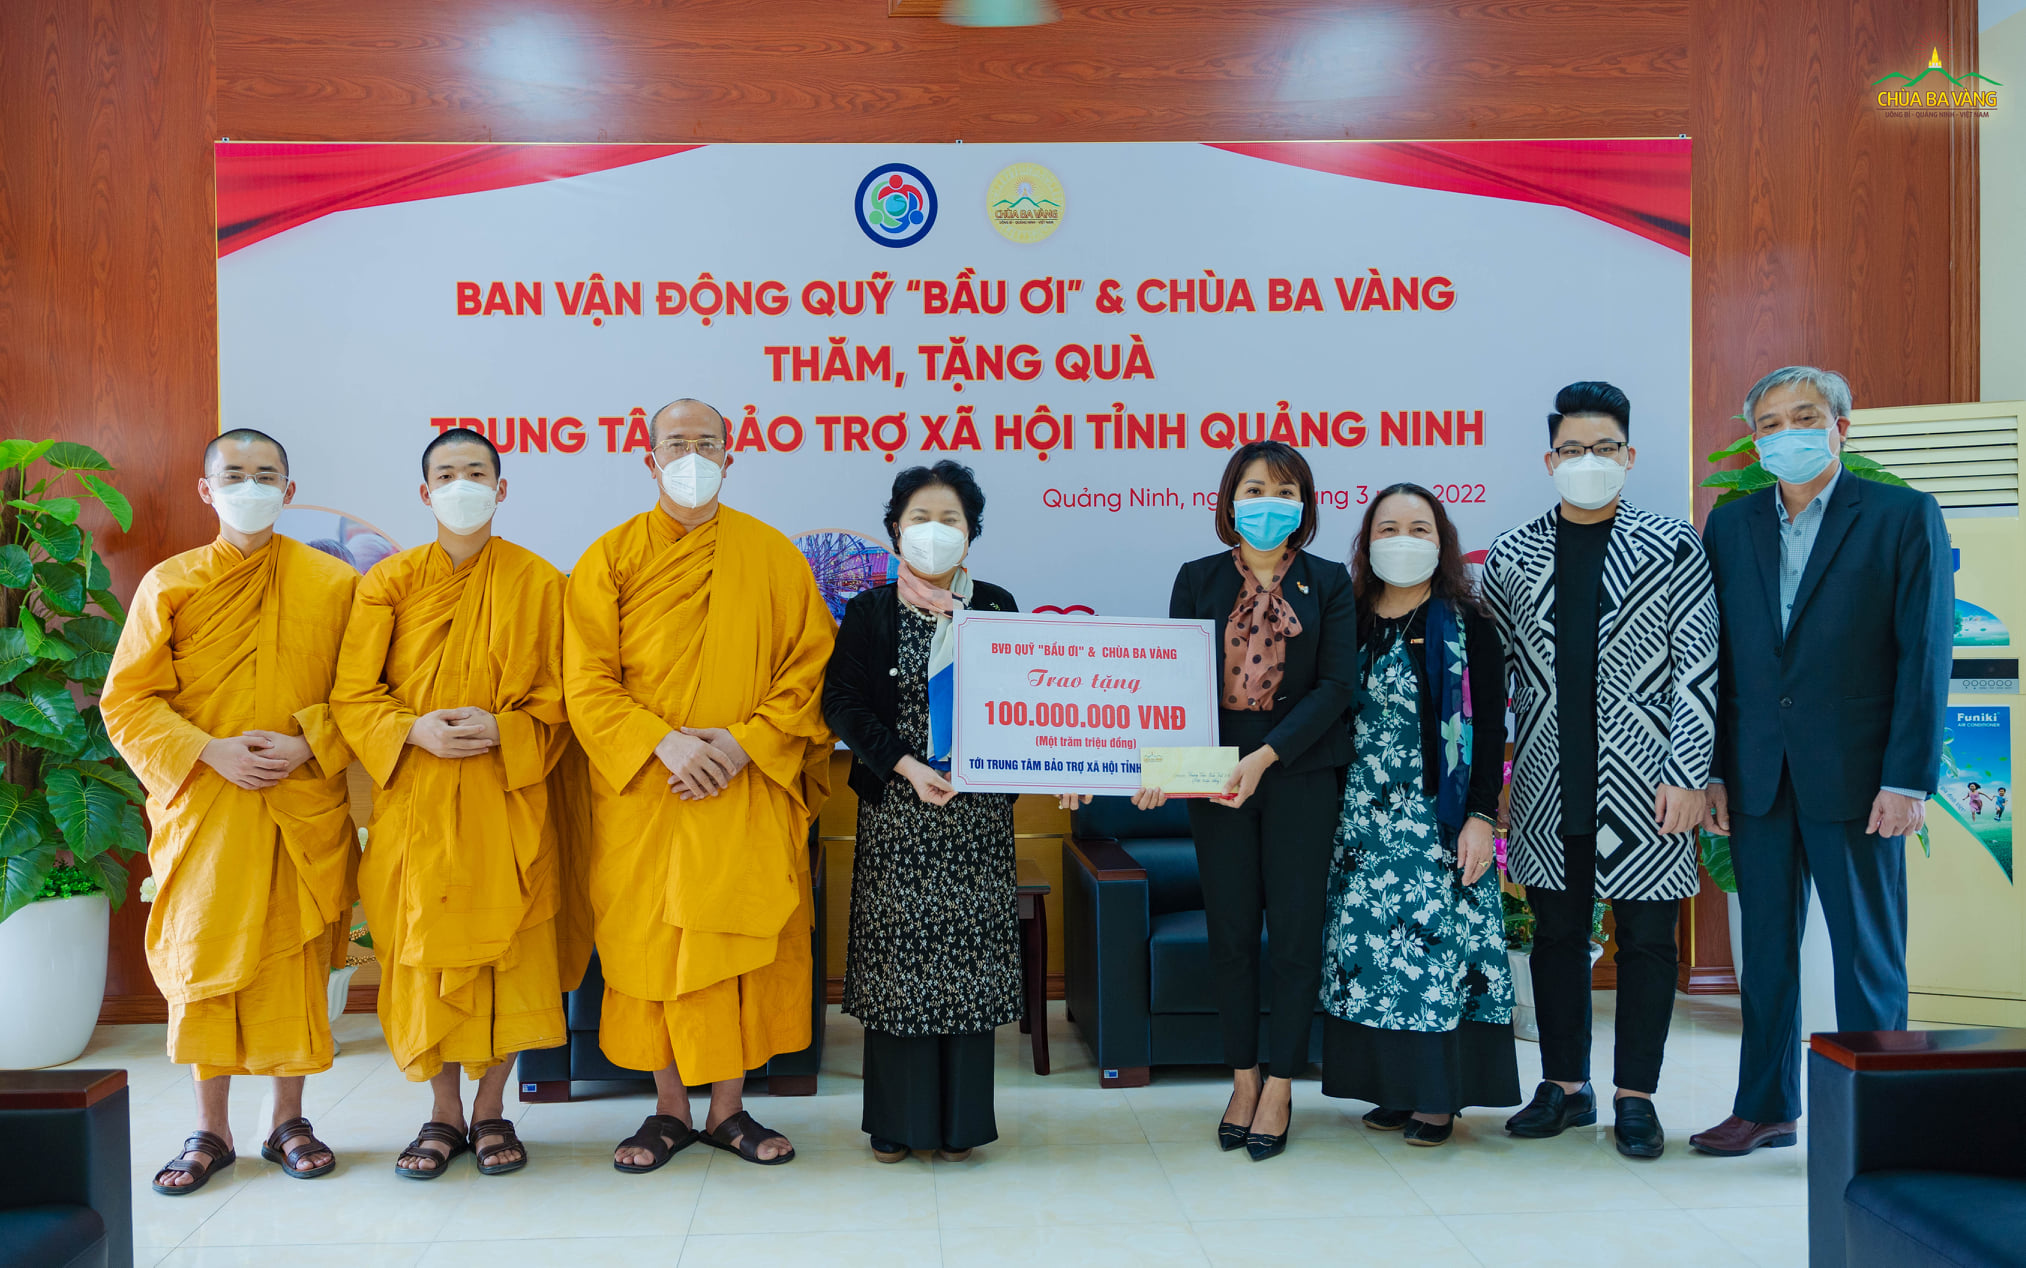 Đoàn chụp ảnh lưu niệm trao quà cho đại diện Trung tâm bảo trợ xã hội tỉnh Quảng Ninh